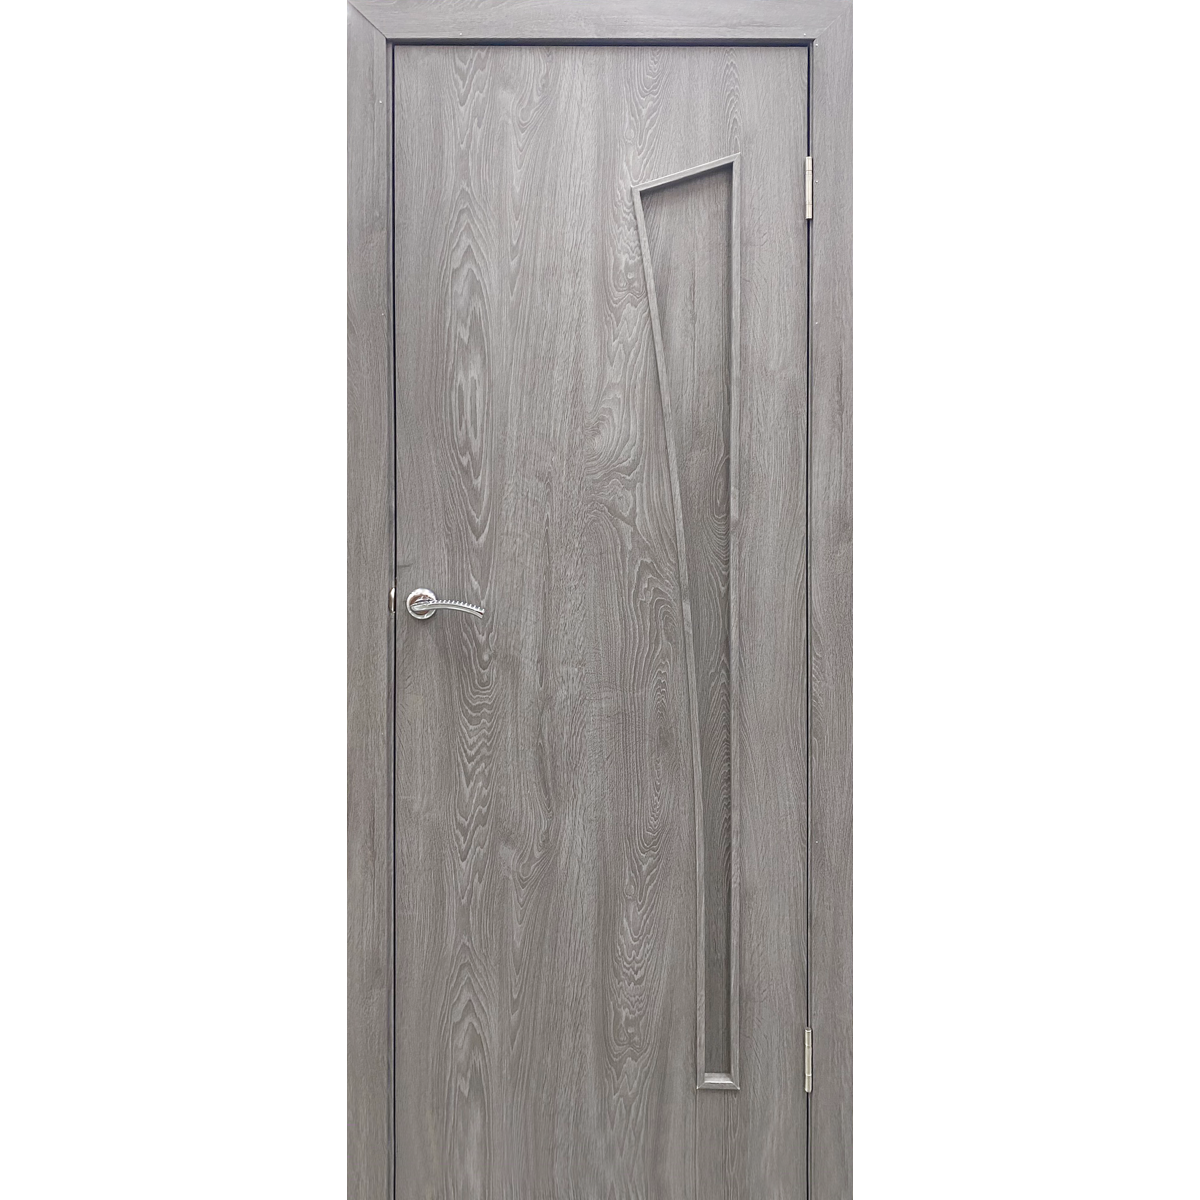 Дверь межкомнатная глухая ламинированная Белеза 200х60 см цвет тернер серый